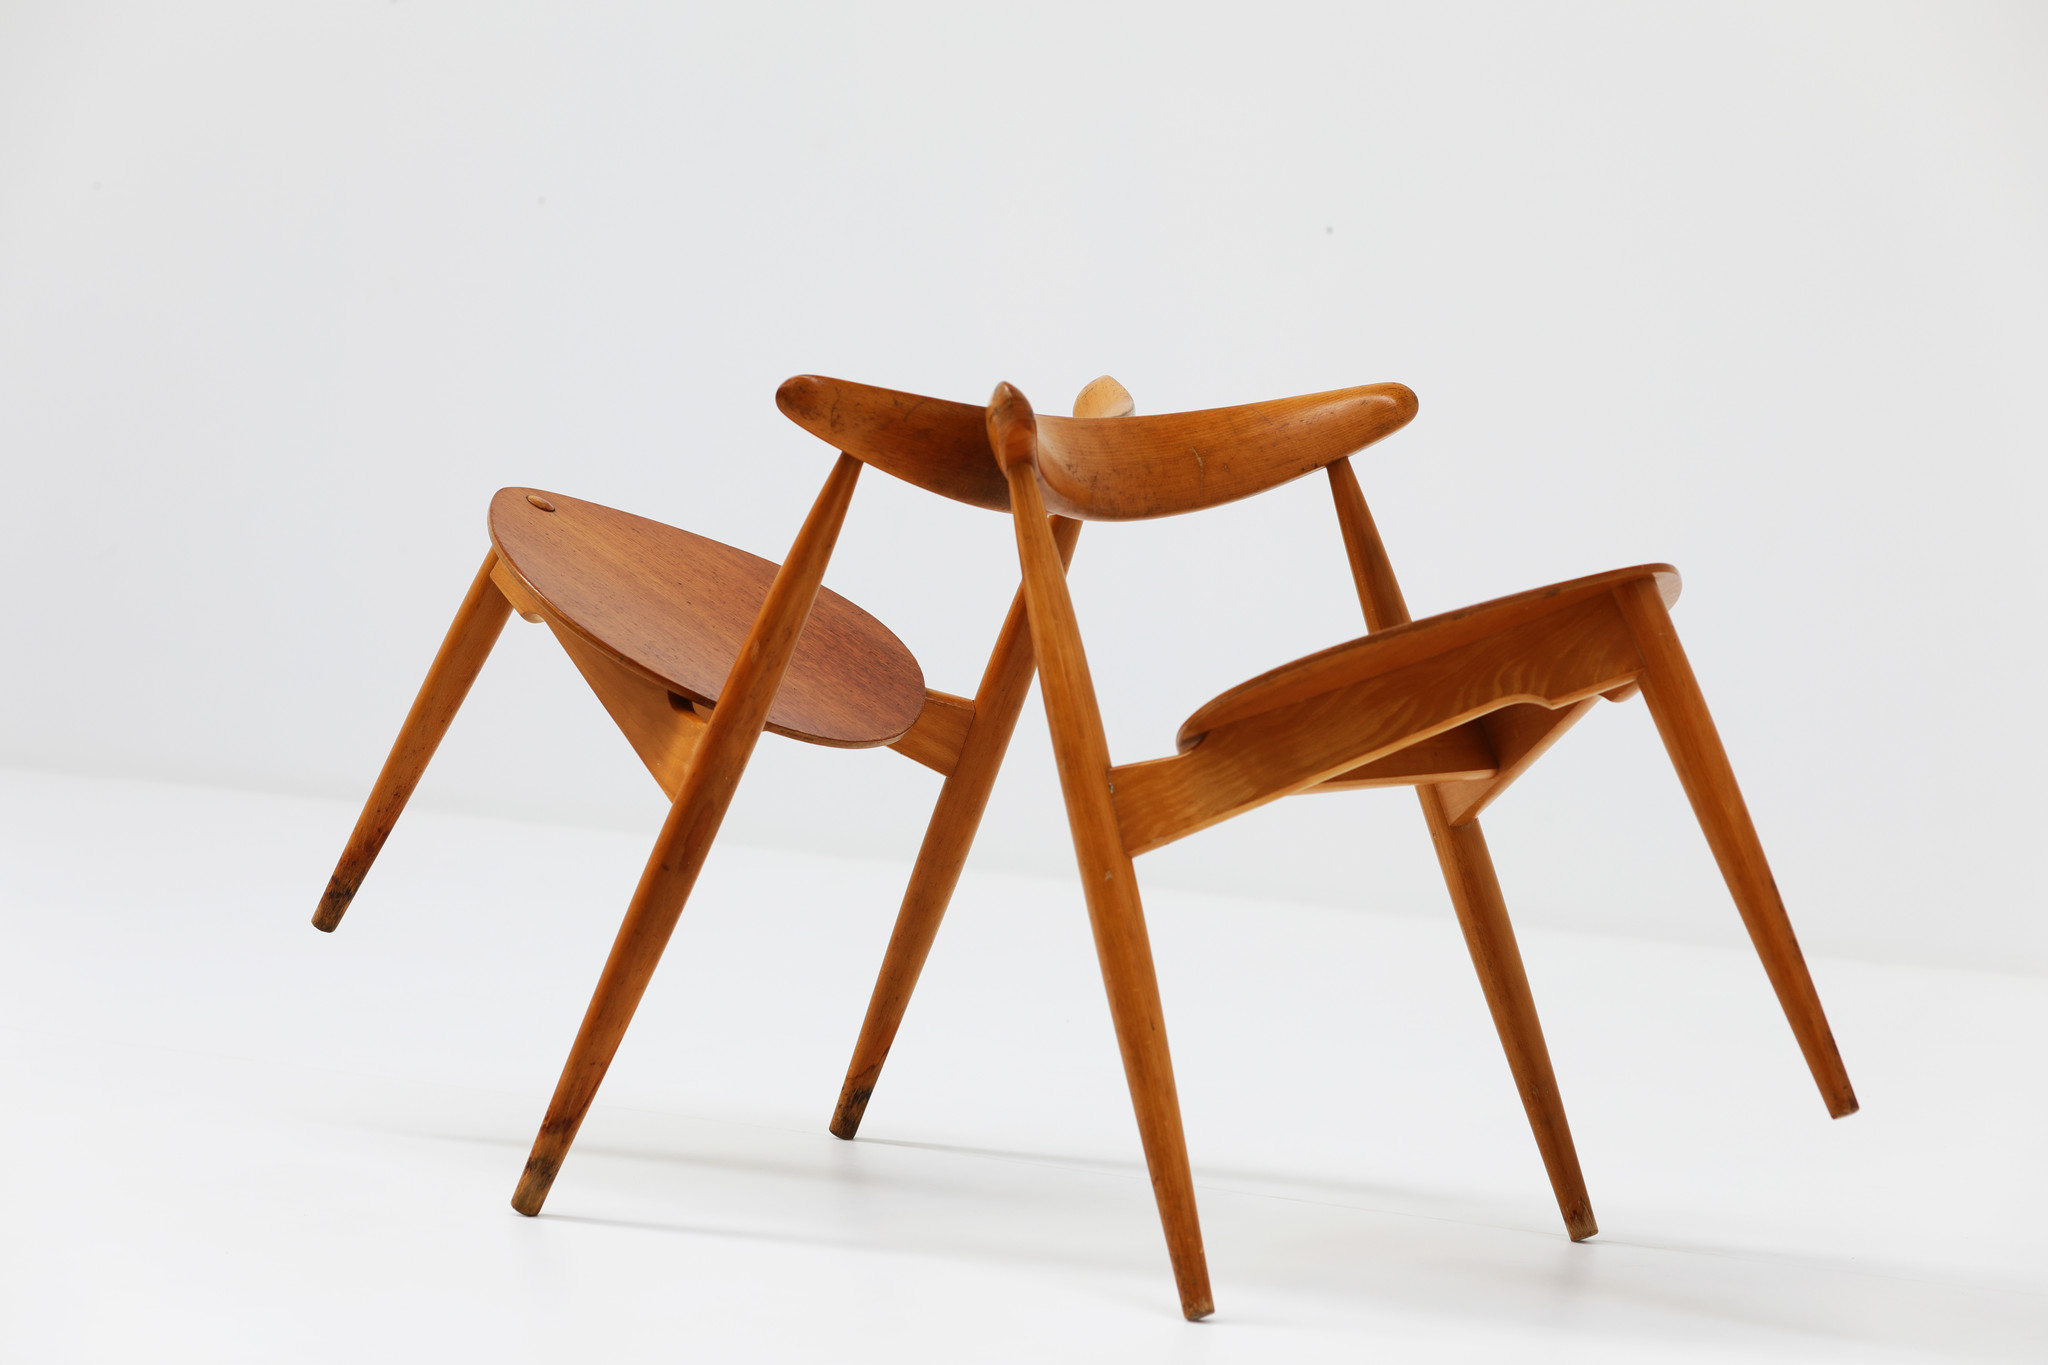 Set of 2 Oak and Teak Heart Chairs by Hans J. Wegner for Fritz Hansen, 1952